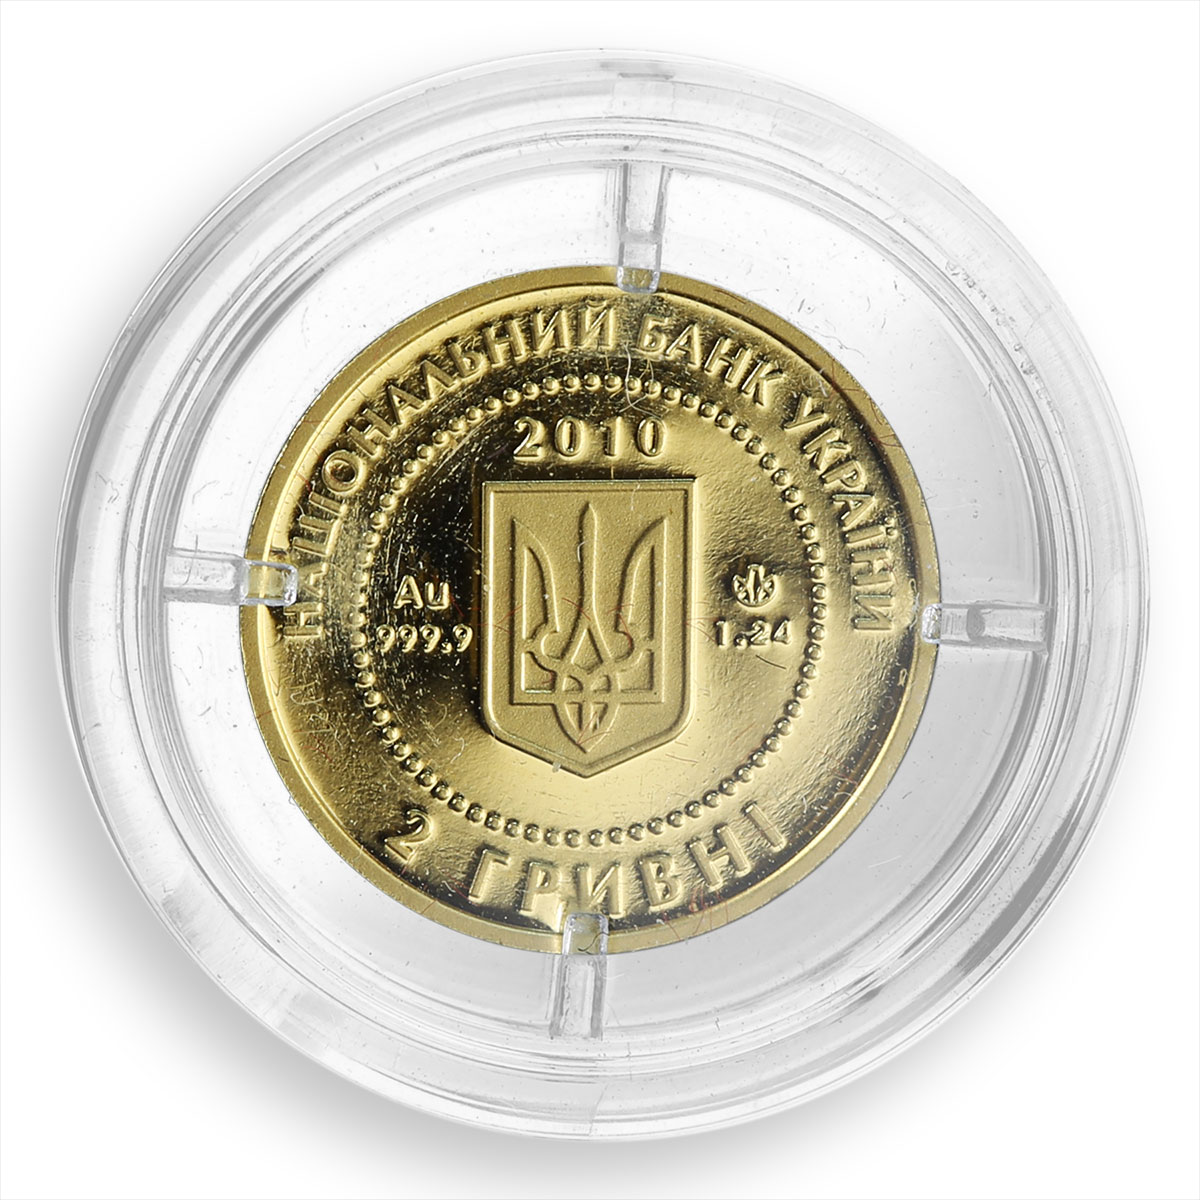 Ukraine, 2 hryvnas, Bee, Wisdom, fertility, gold, coin, 2010